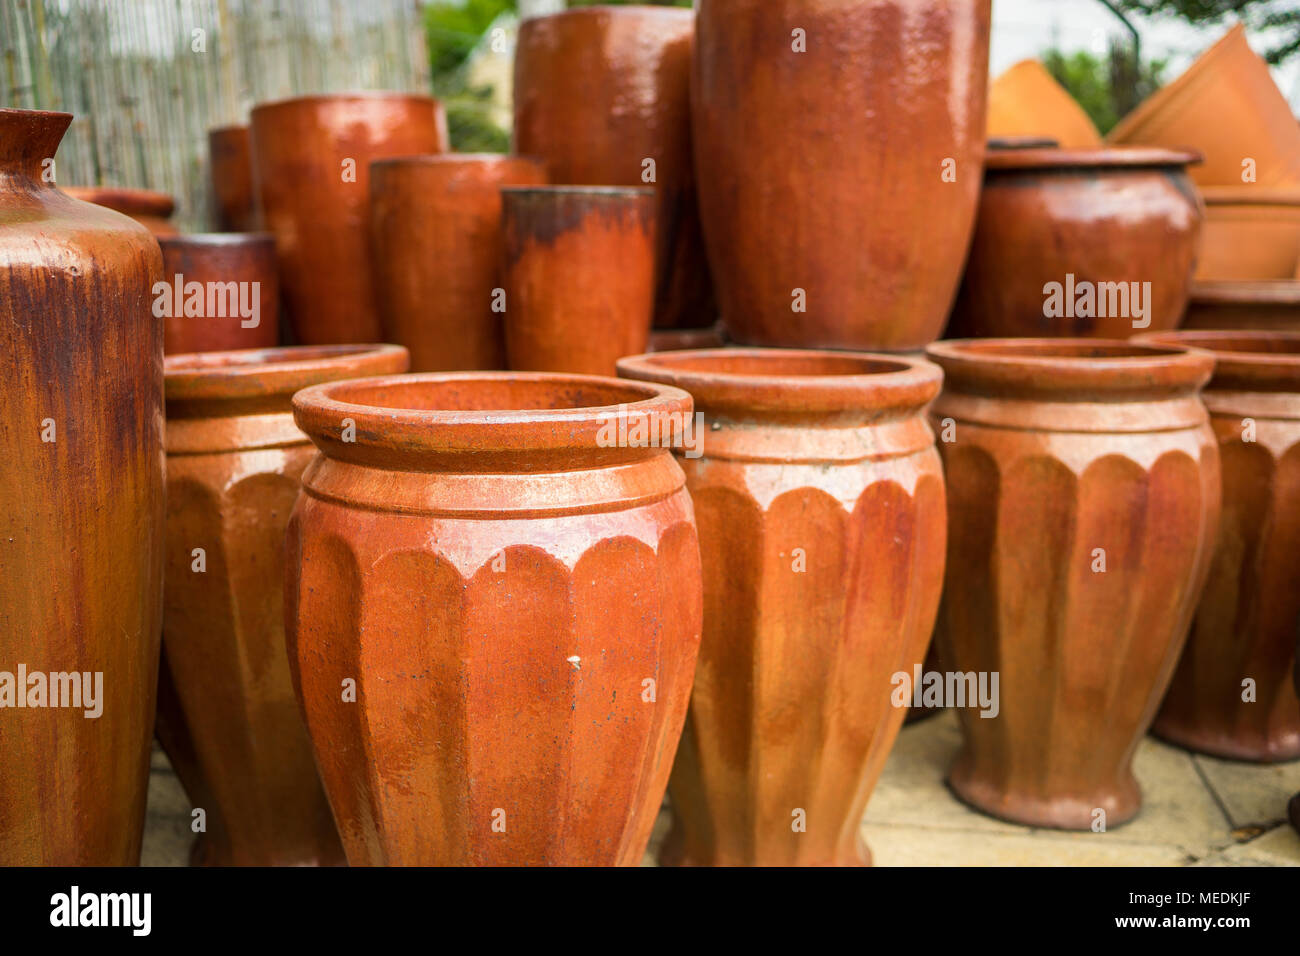 https://c8.alamy.com/comp/MEDKJF/large-orange-brown-ceramic-flower-pots-stacked-at-a-plant-nursery-MEDKJF.jpg